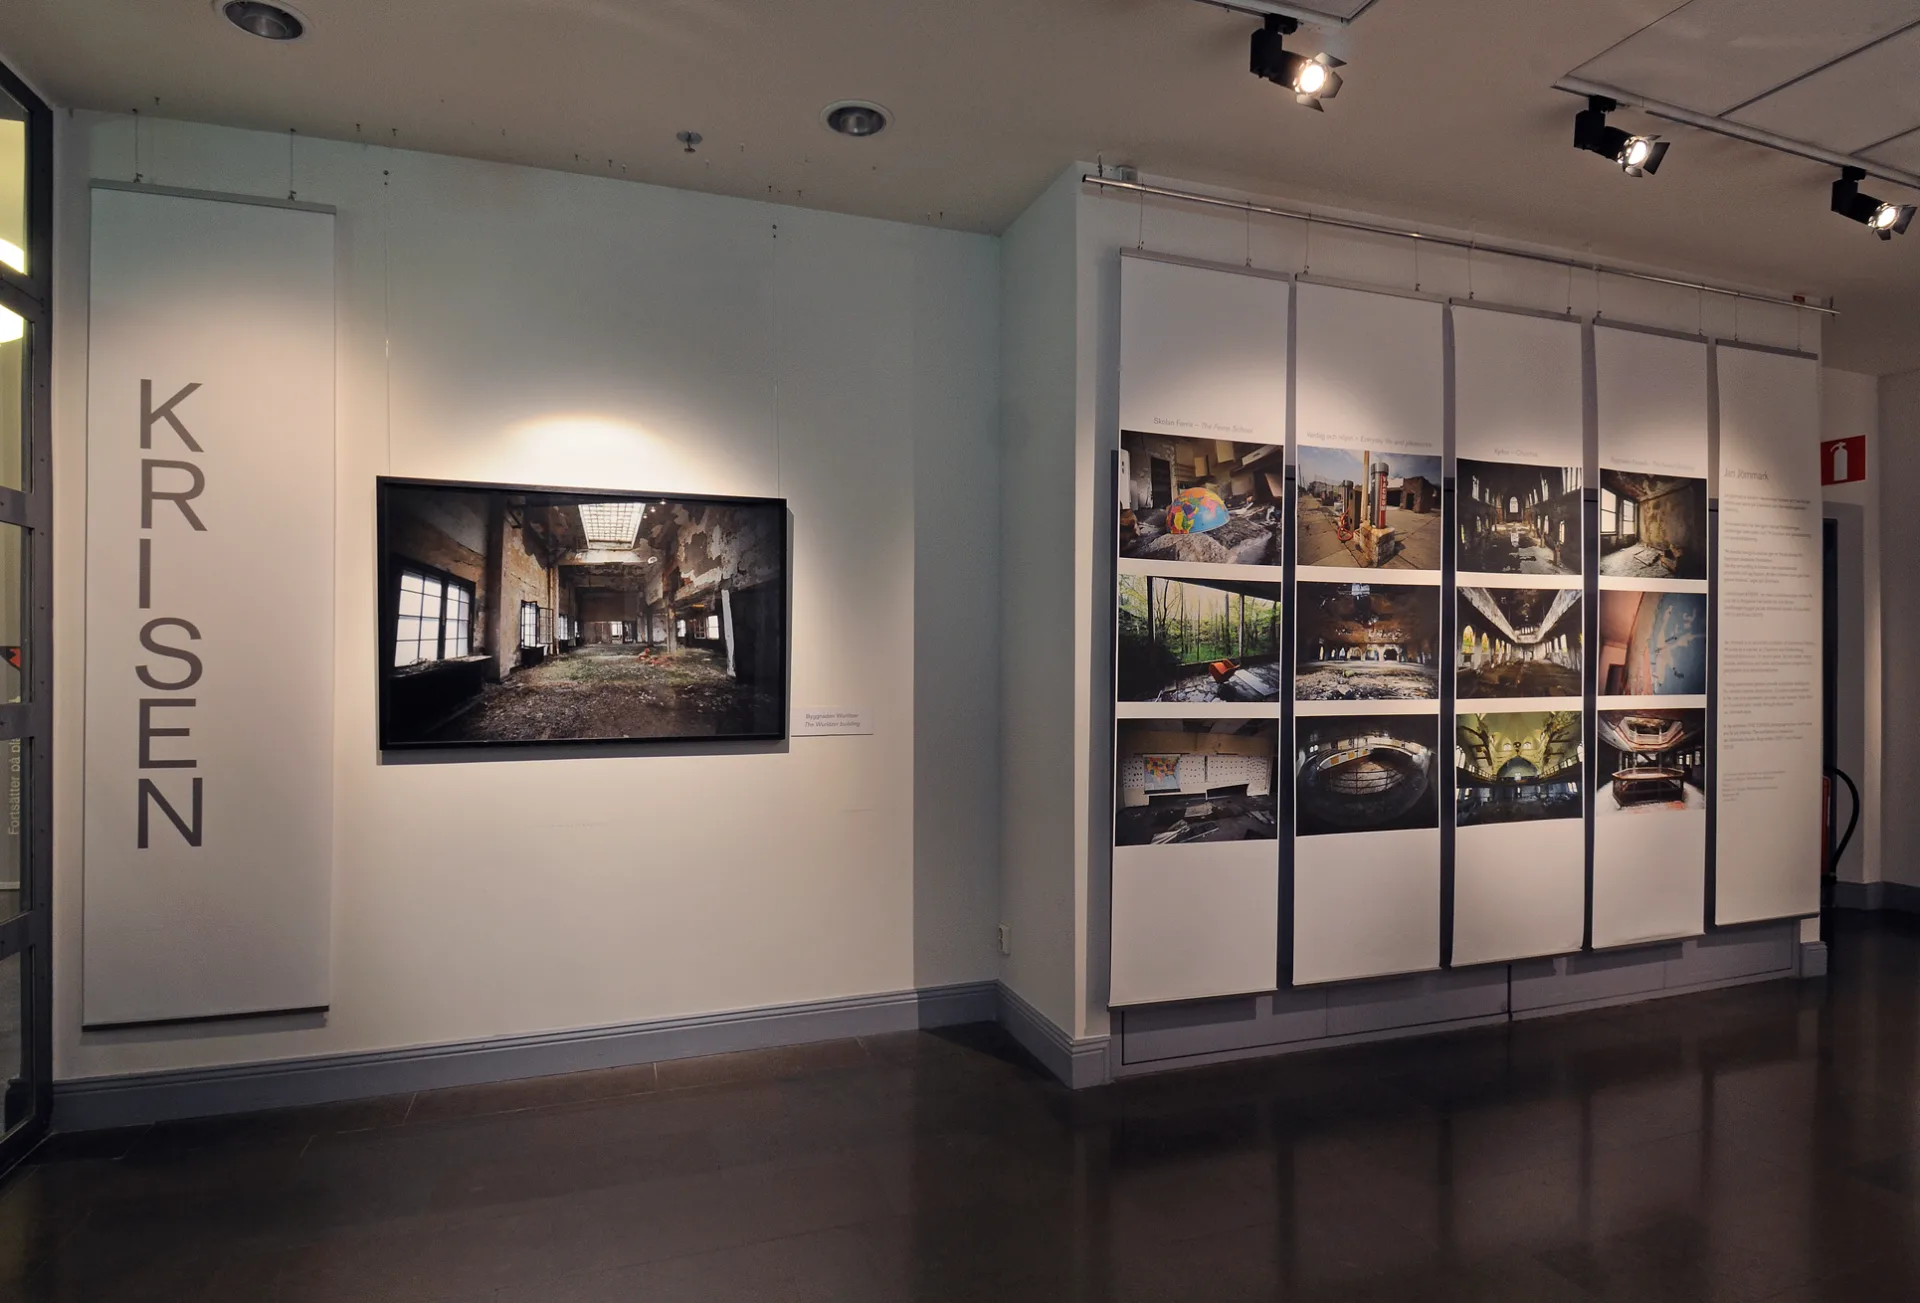 En vägg med fotografier från utställningen krisen